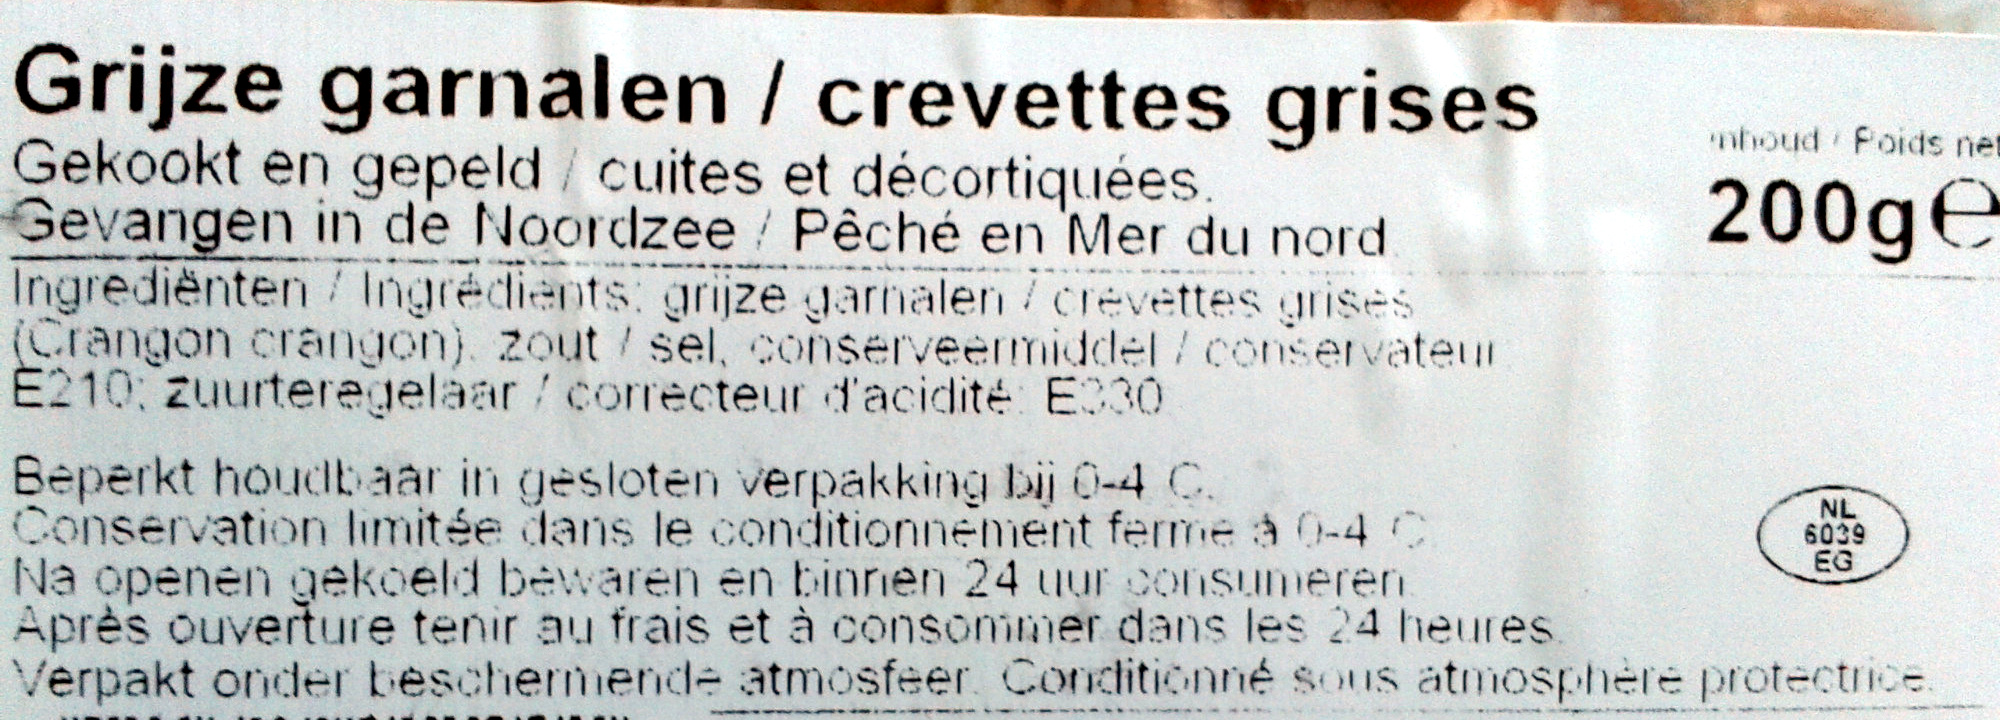 Crevettes grises cuites et décortiquées - Ingrediënten - fr